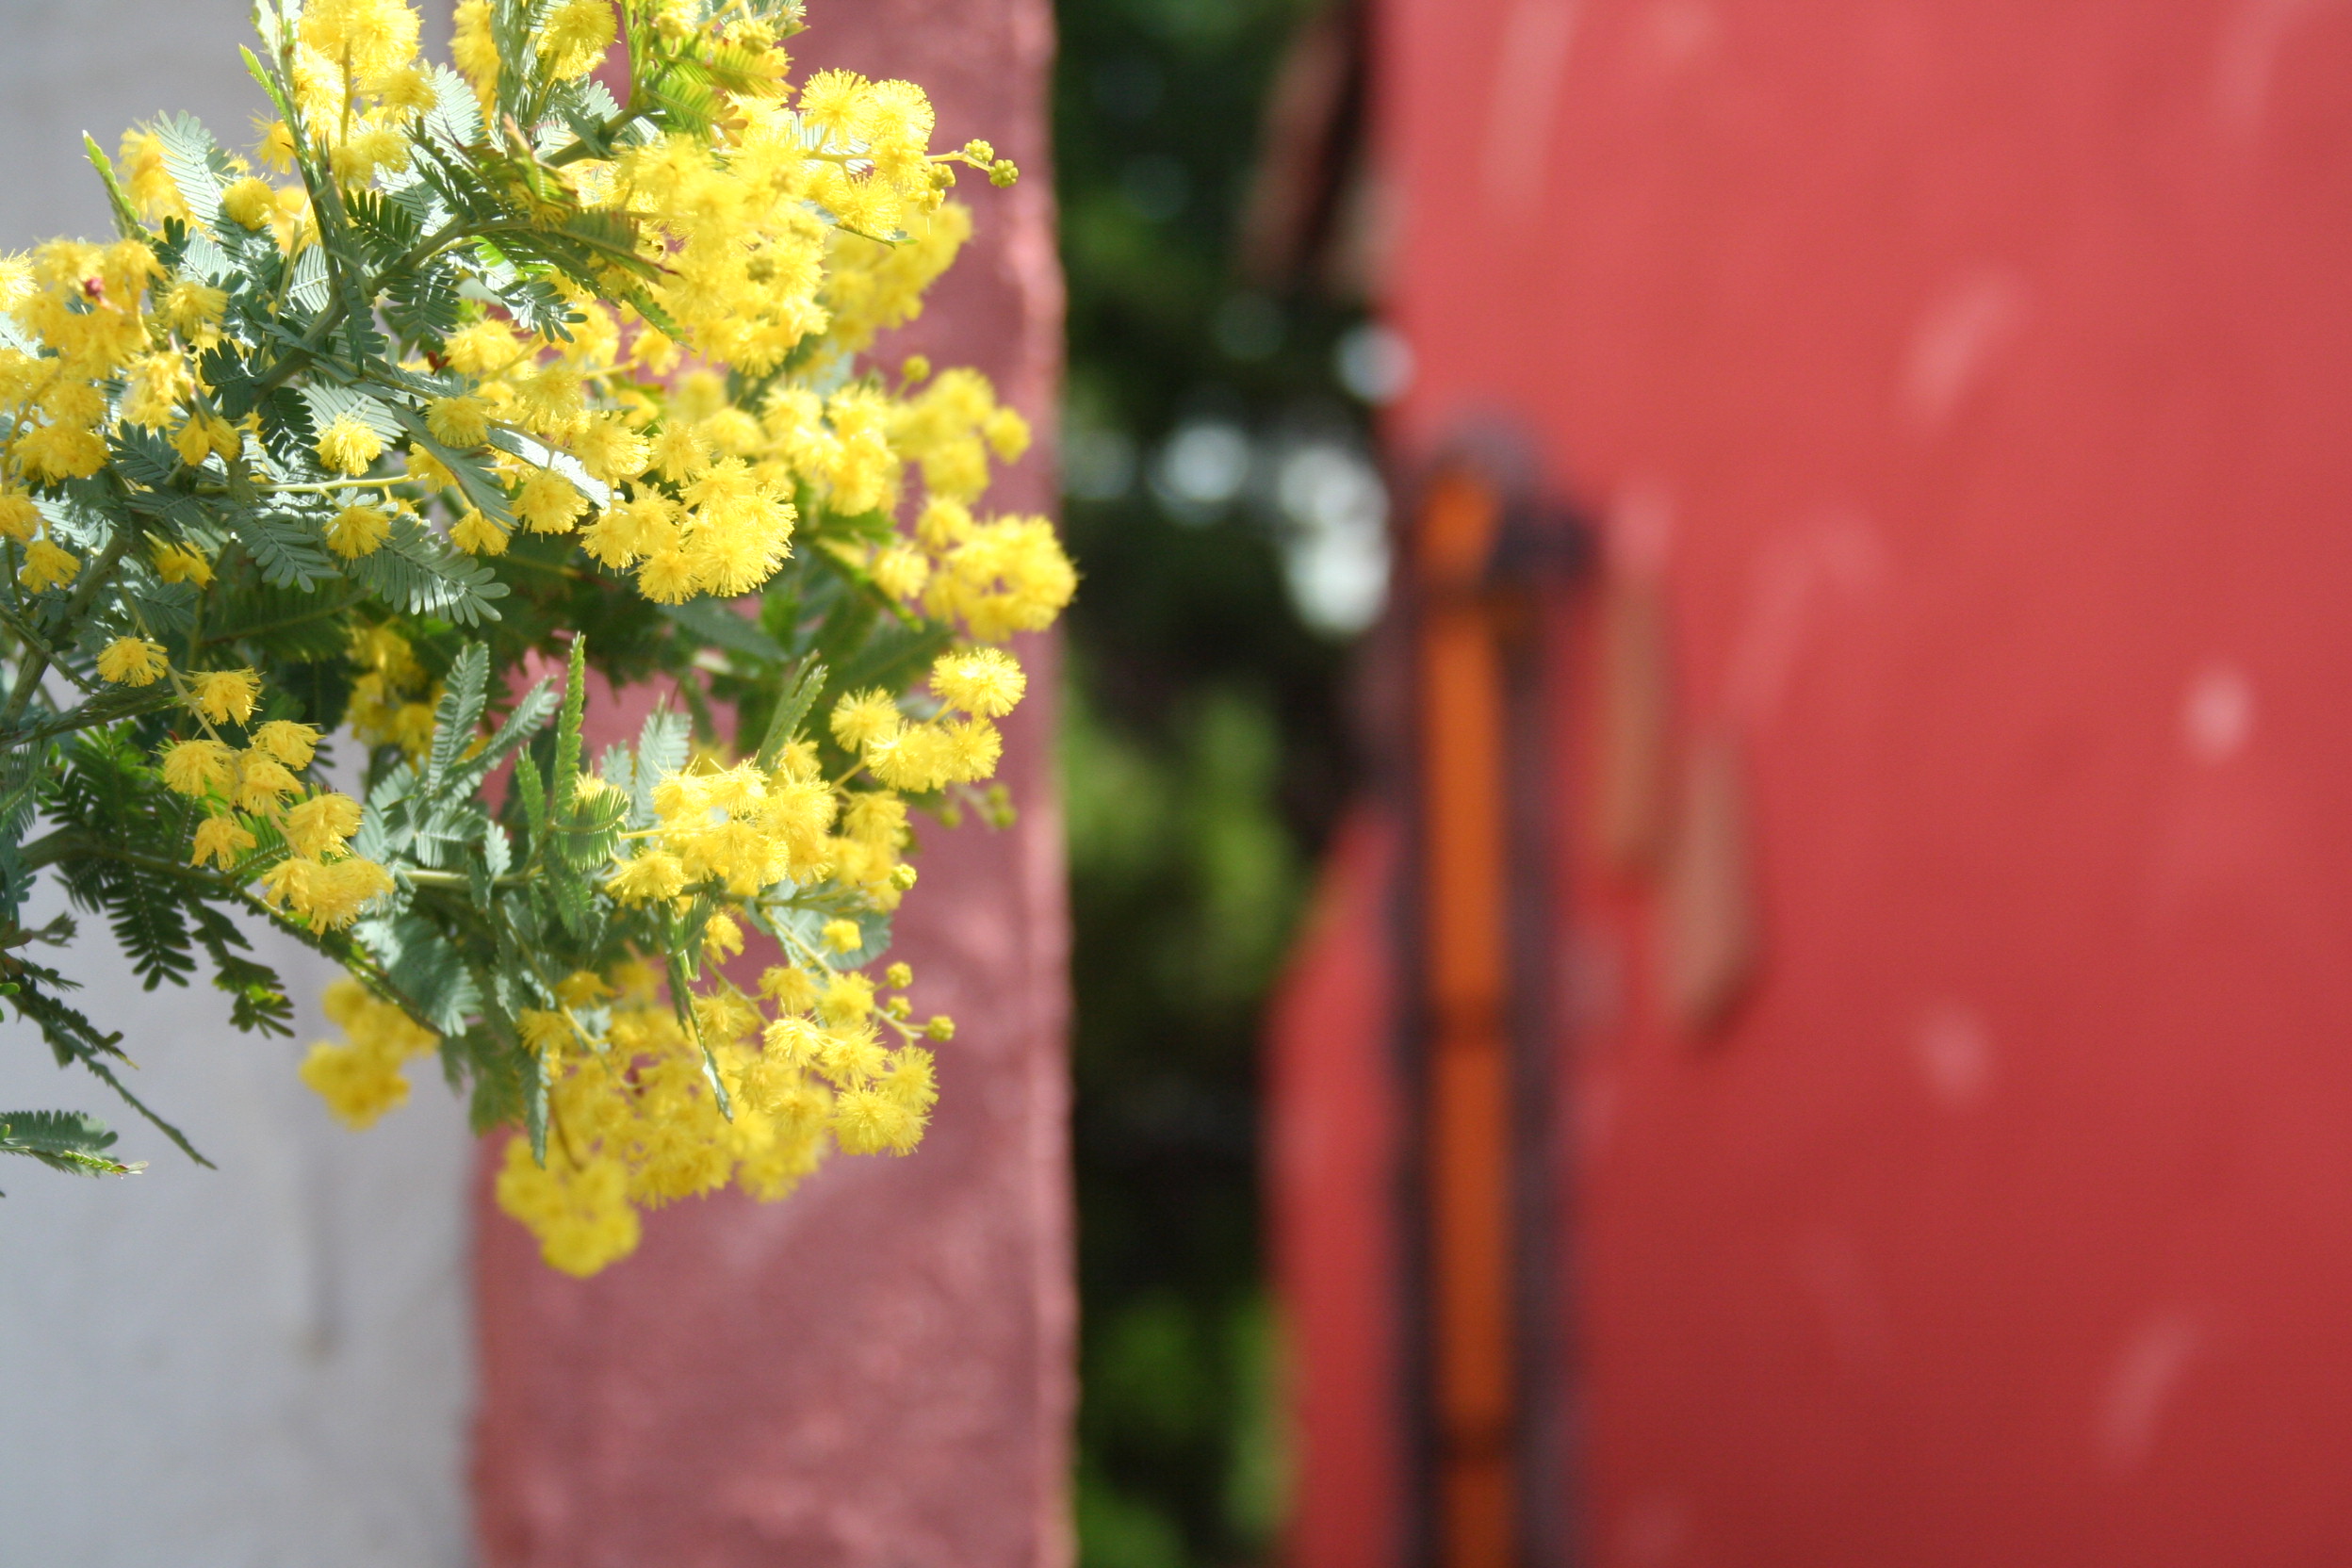 露天風呂横のミモザの木。暖かい季節には黄色い花を咲かせます。